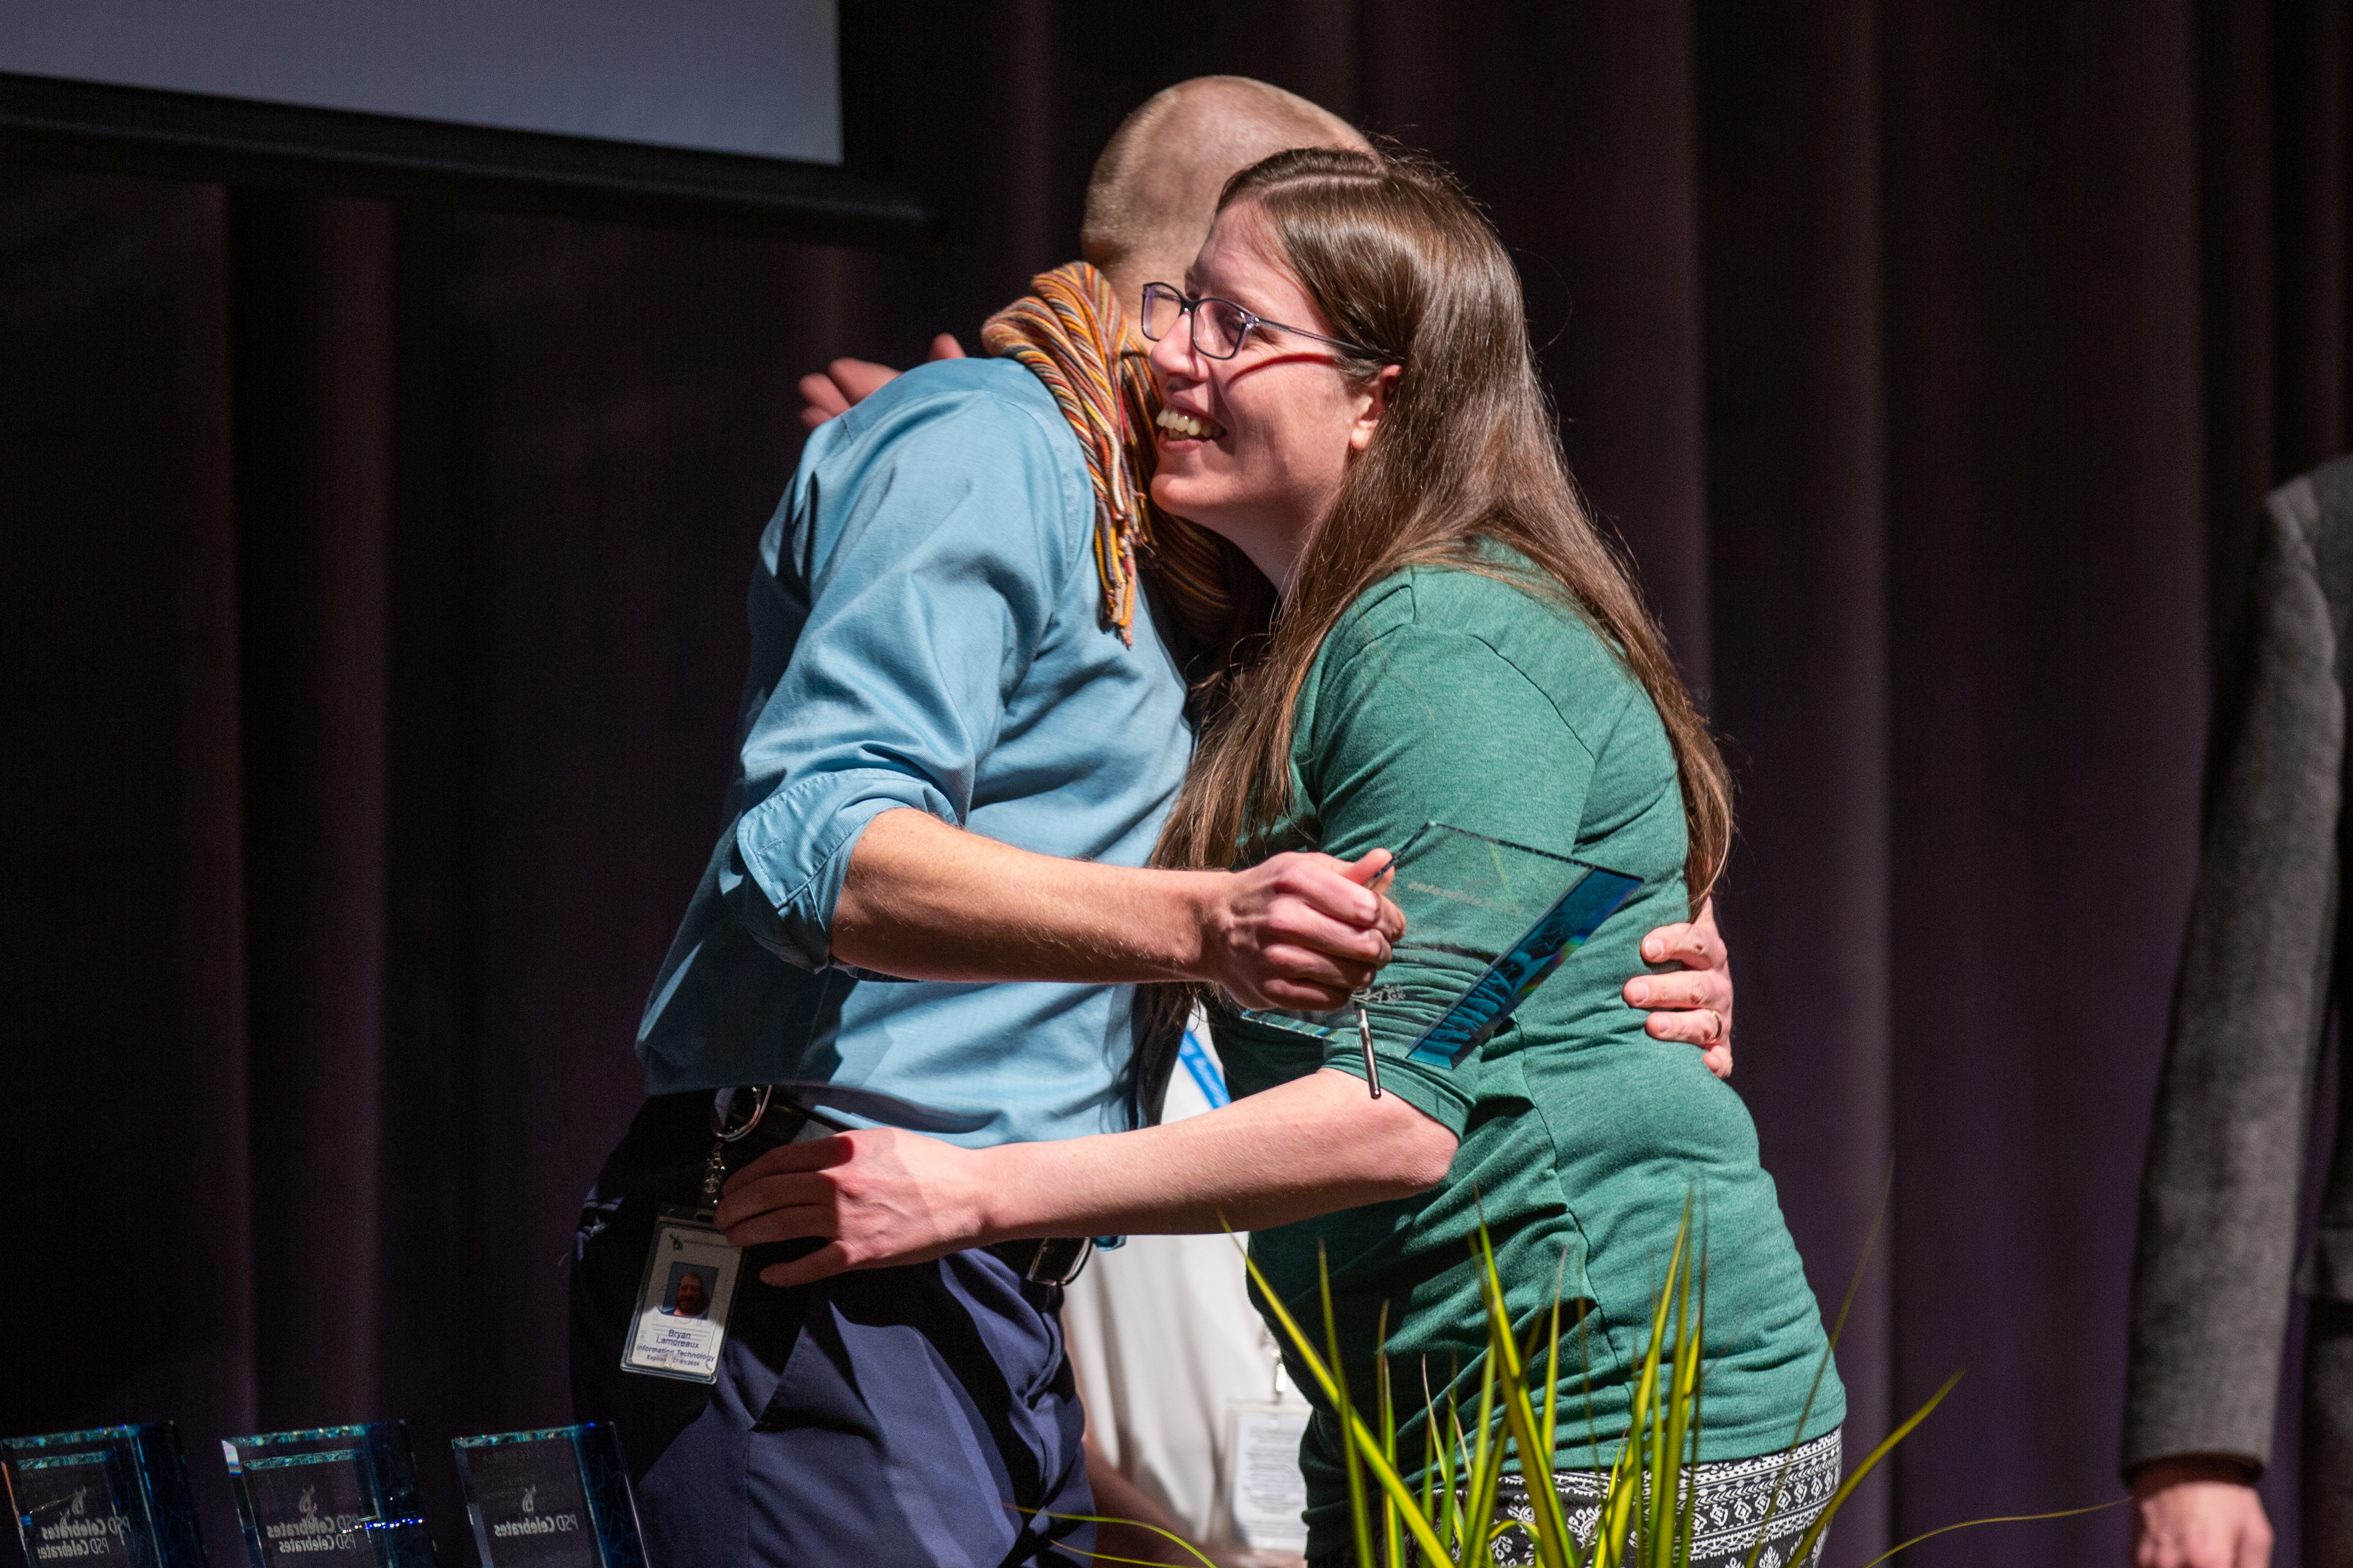 A PSD staff award winner gets a hug.